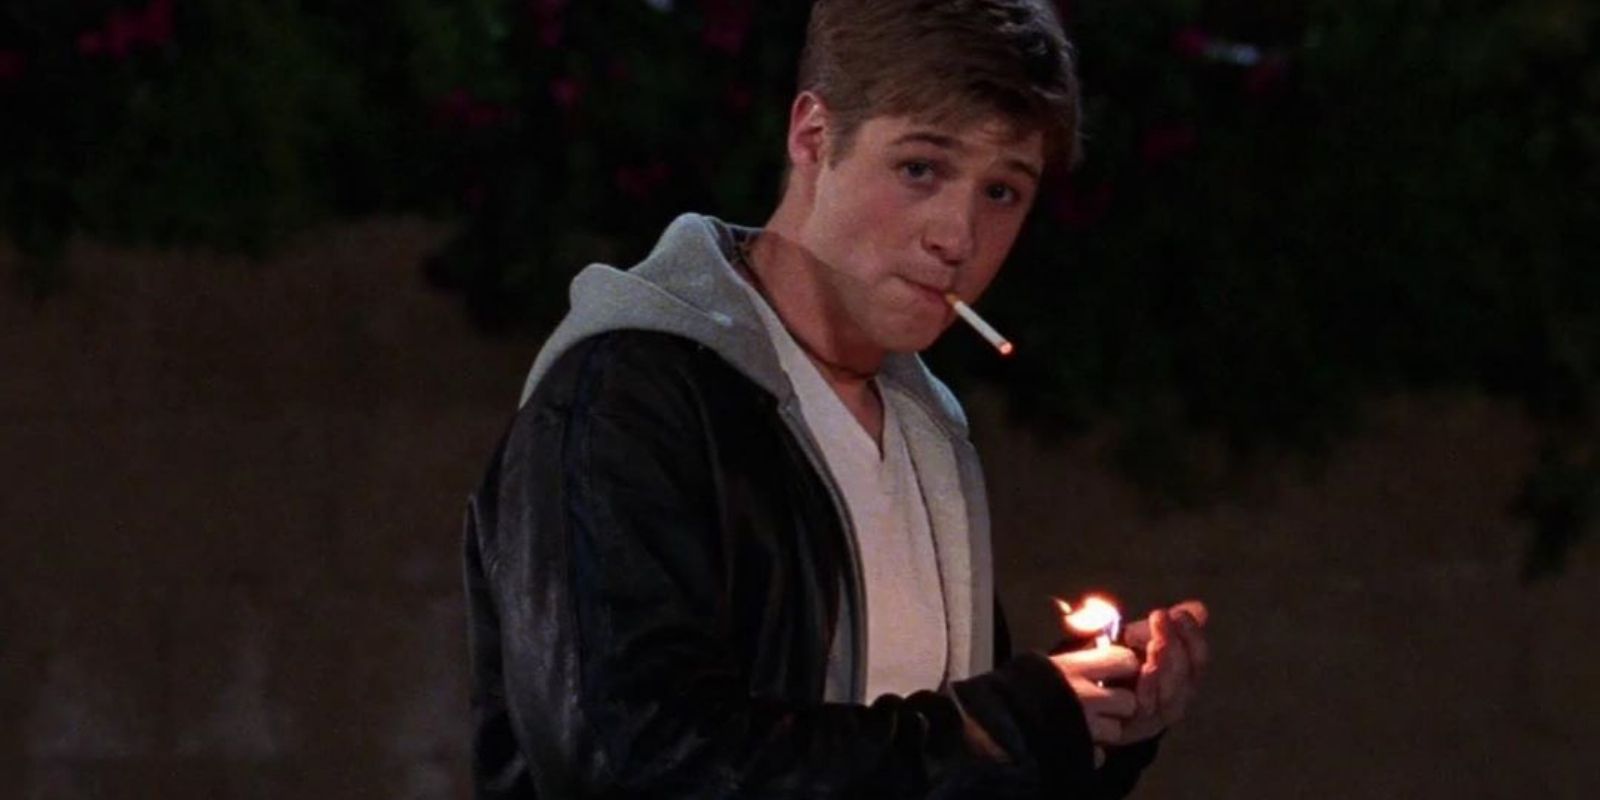 Ryan smoking outside at night